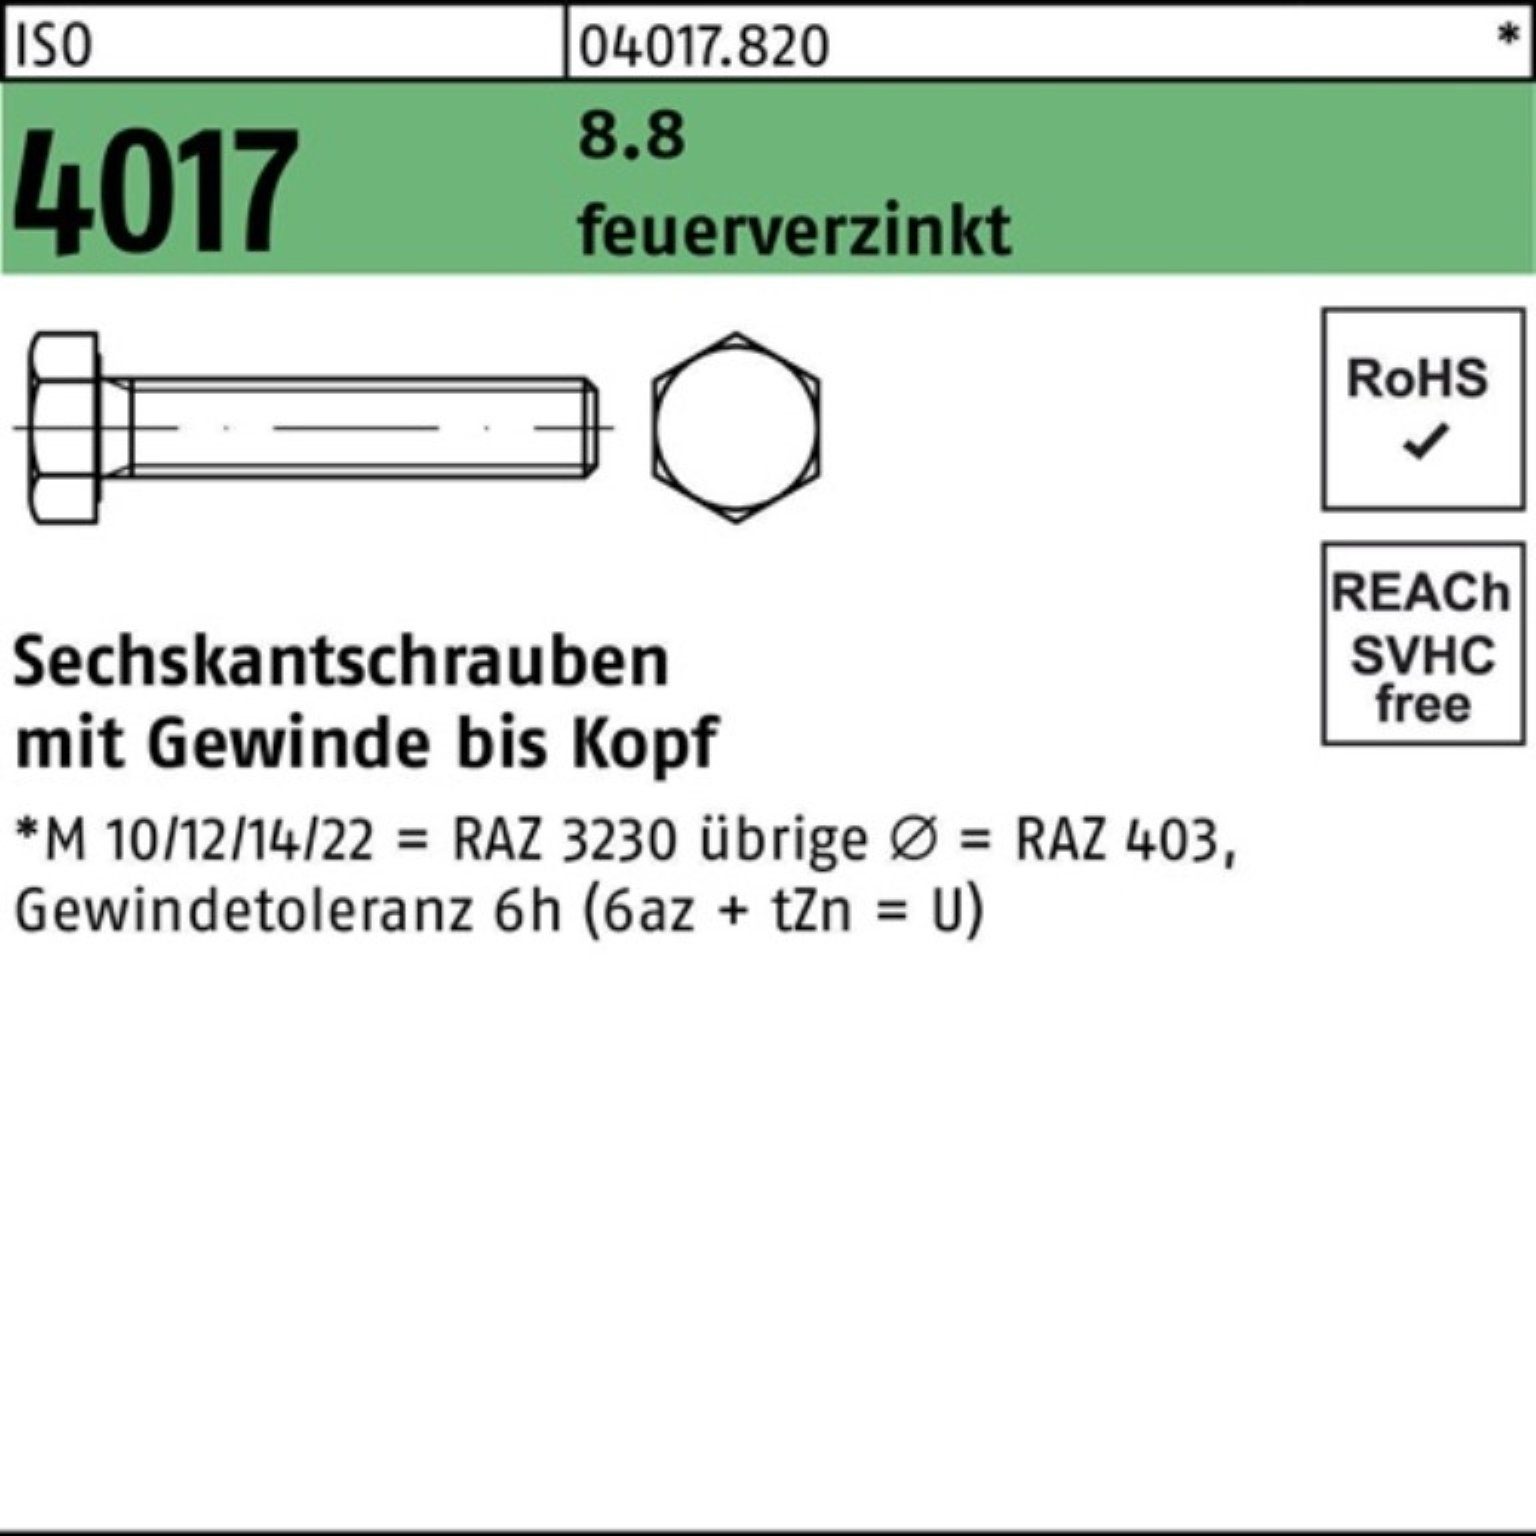 Bufab Sechskantschraube 100er ISO 35 St 100 M12x 4017 VG Sechskantschraube 8.8 Pack feuerverz